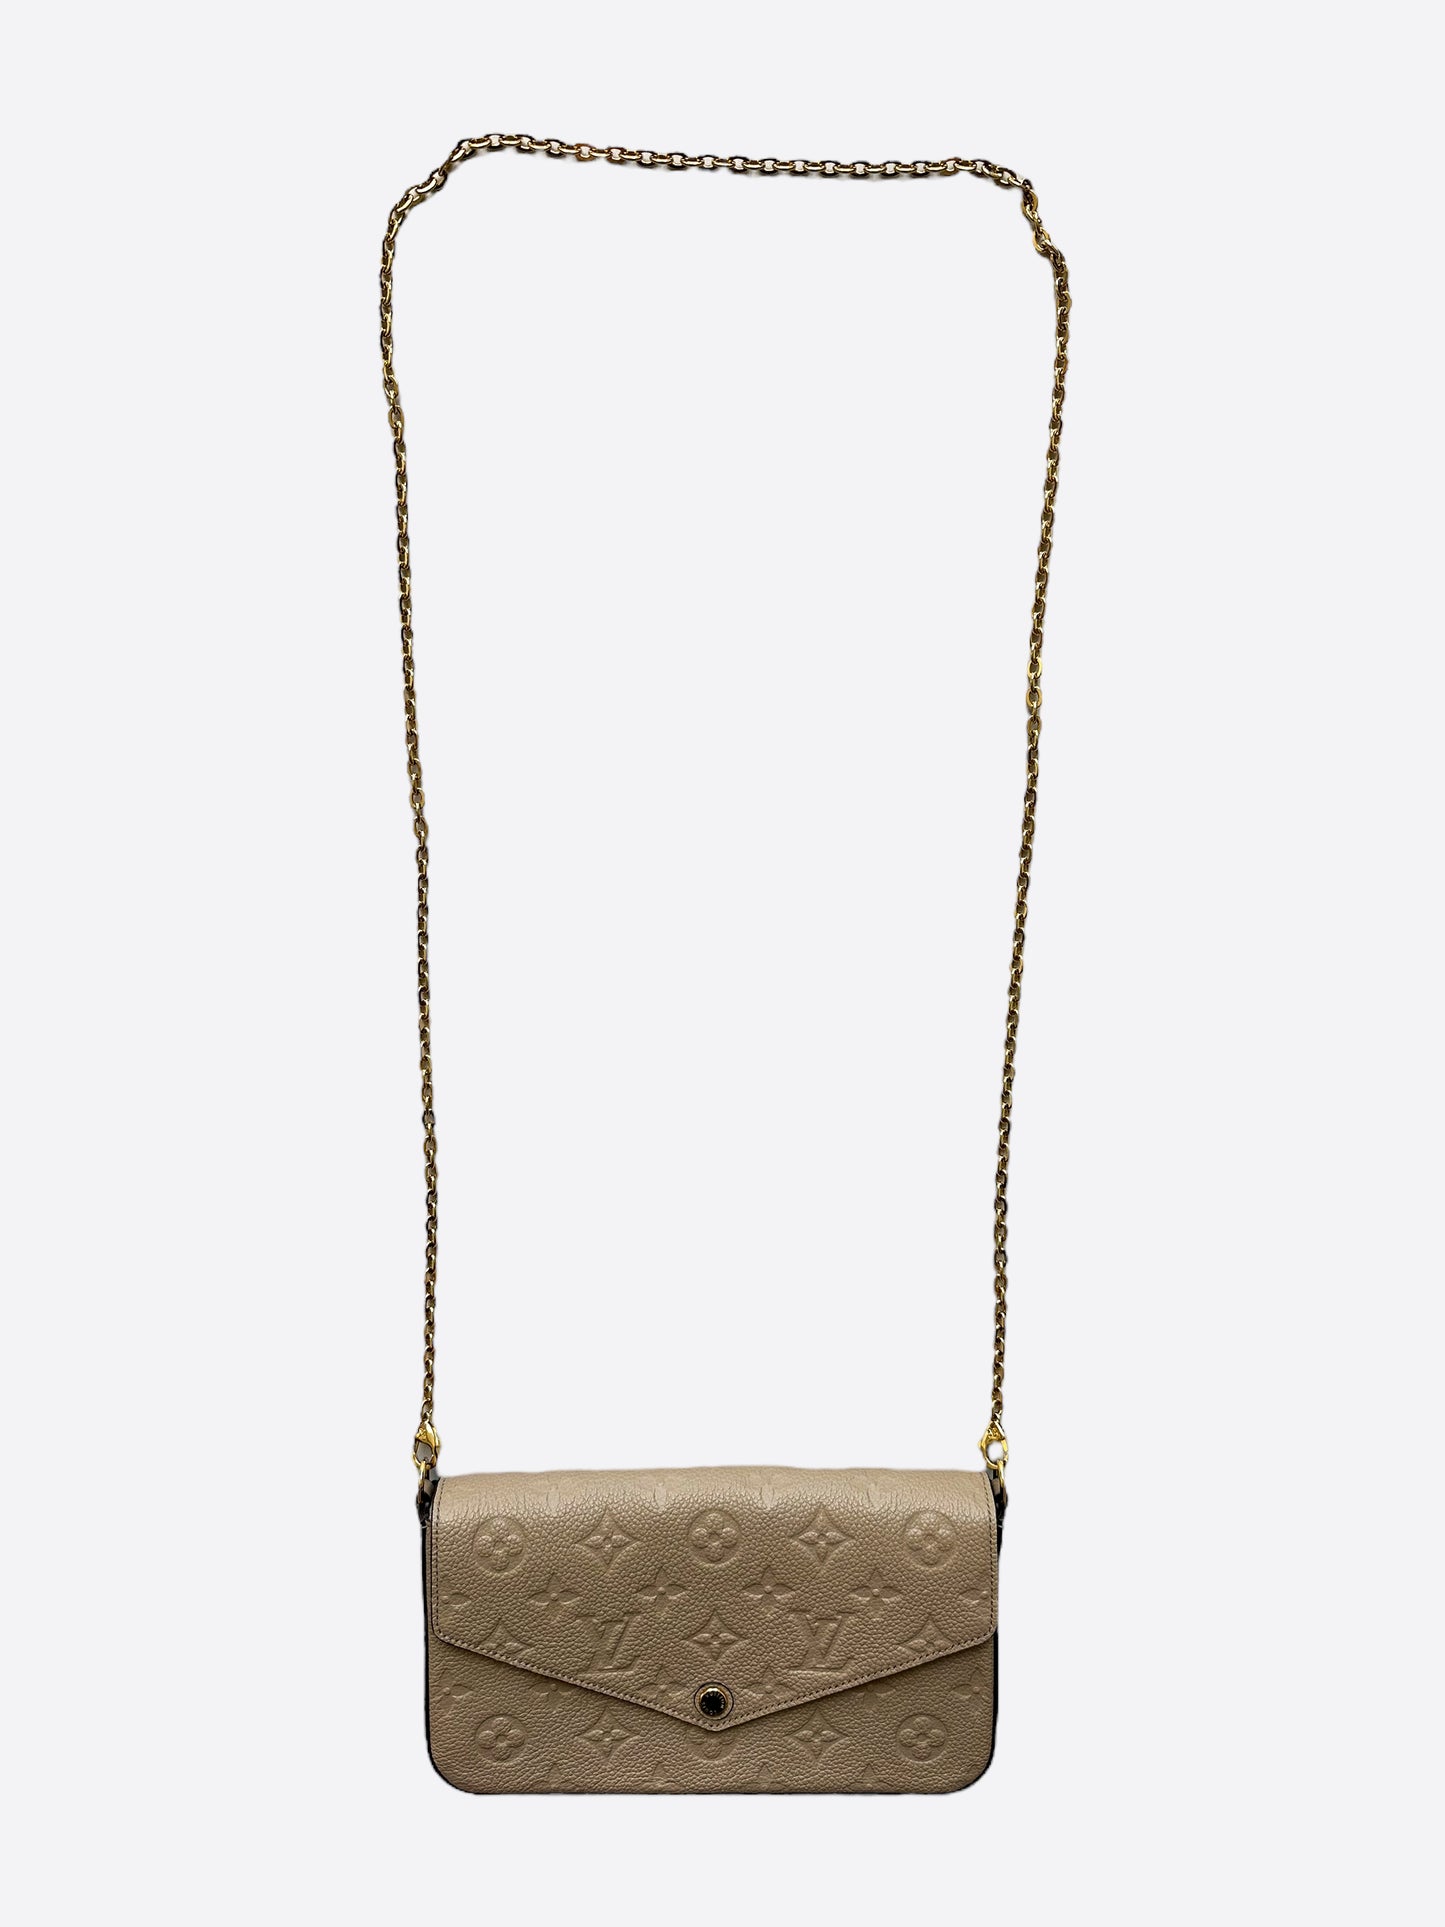 Louis Vuitton Felicie Pochette Monogram Empreinte Cream in Leather